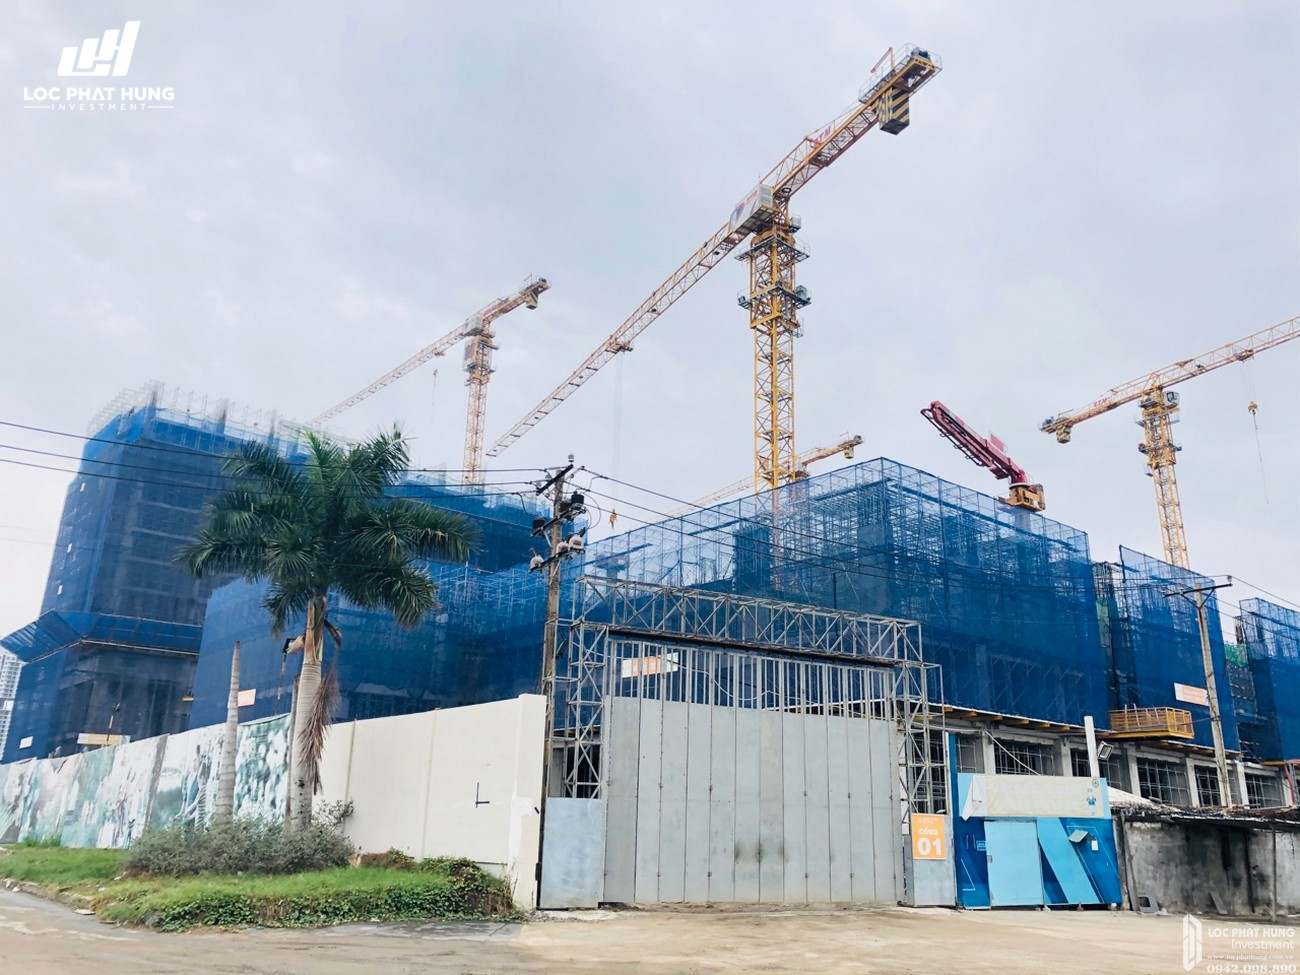 Tiến độ xây dựng dự án căn hộ Q7 Sài Gòn Riverside Complex 05/2020